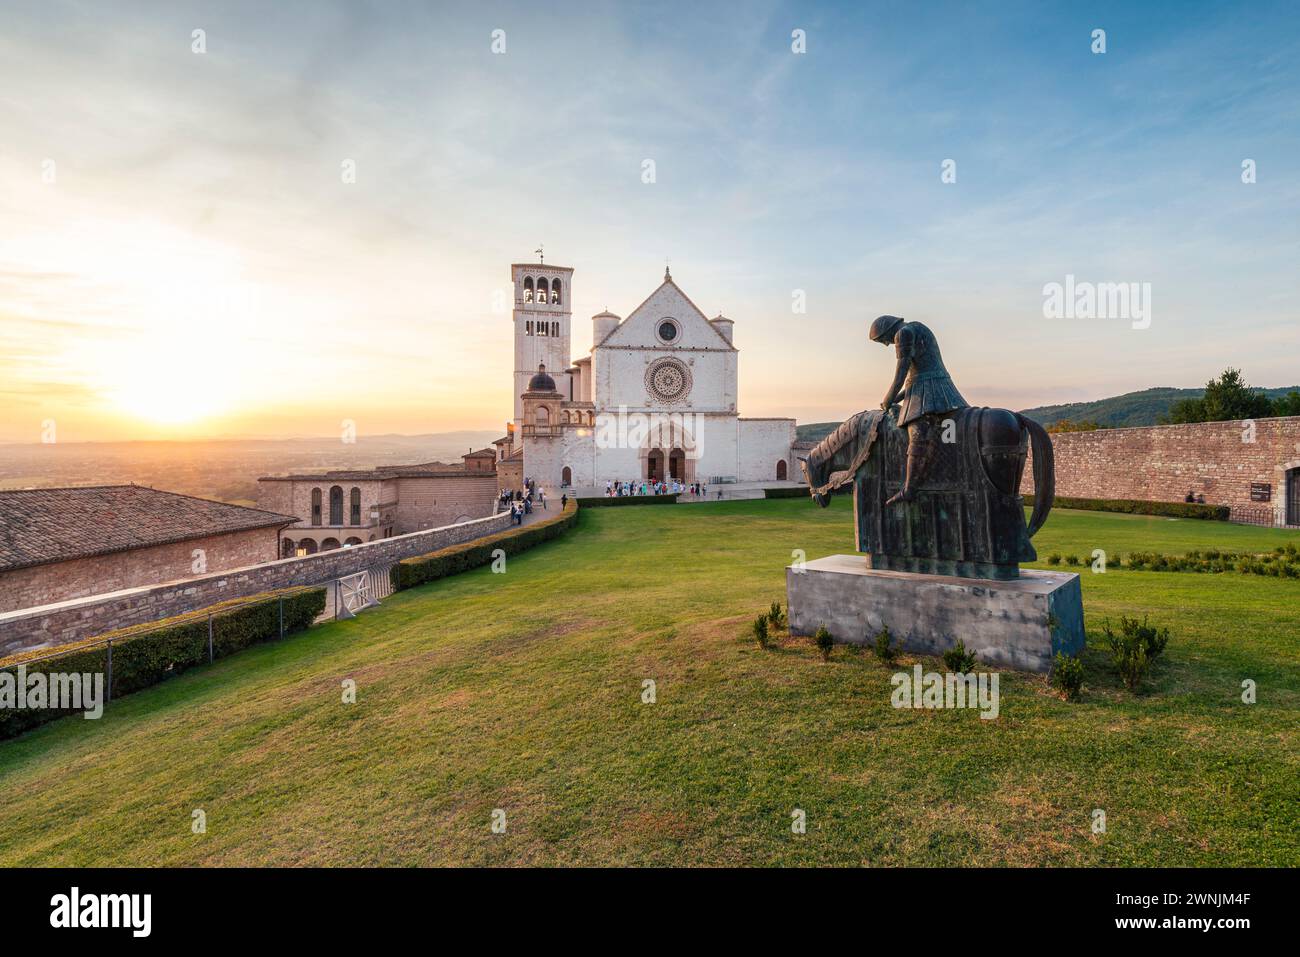 Die Basilika des HL. Franziskus von Assisi mit einer bronzenen Reiterstatue im Sonnenuntergang, Umbrien, Italien Foto Stock